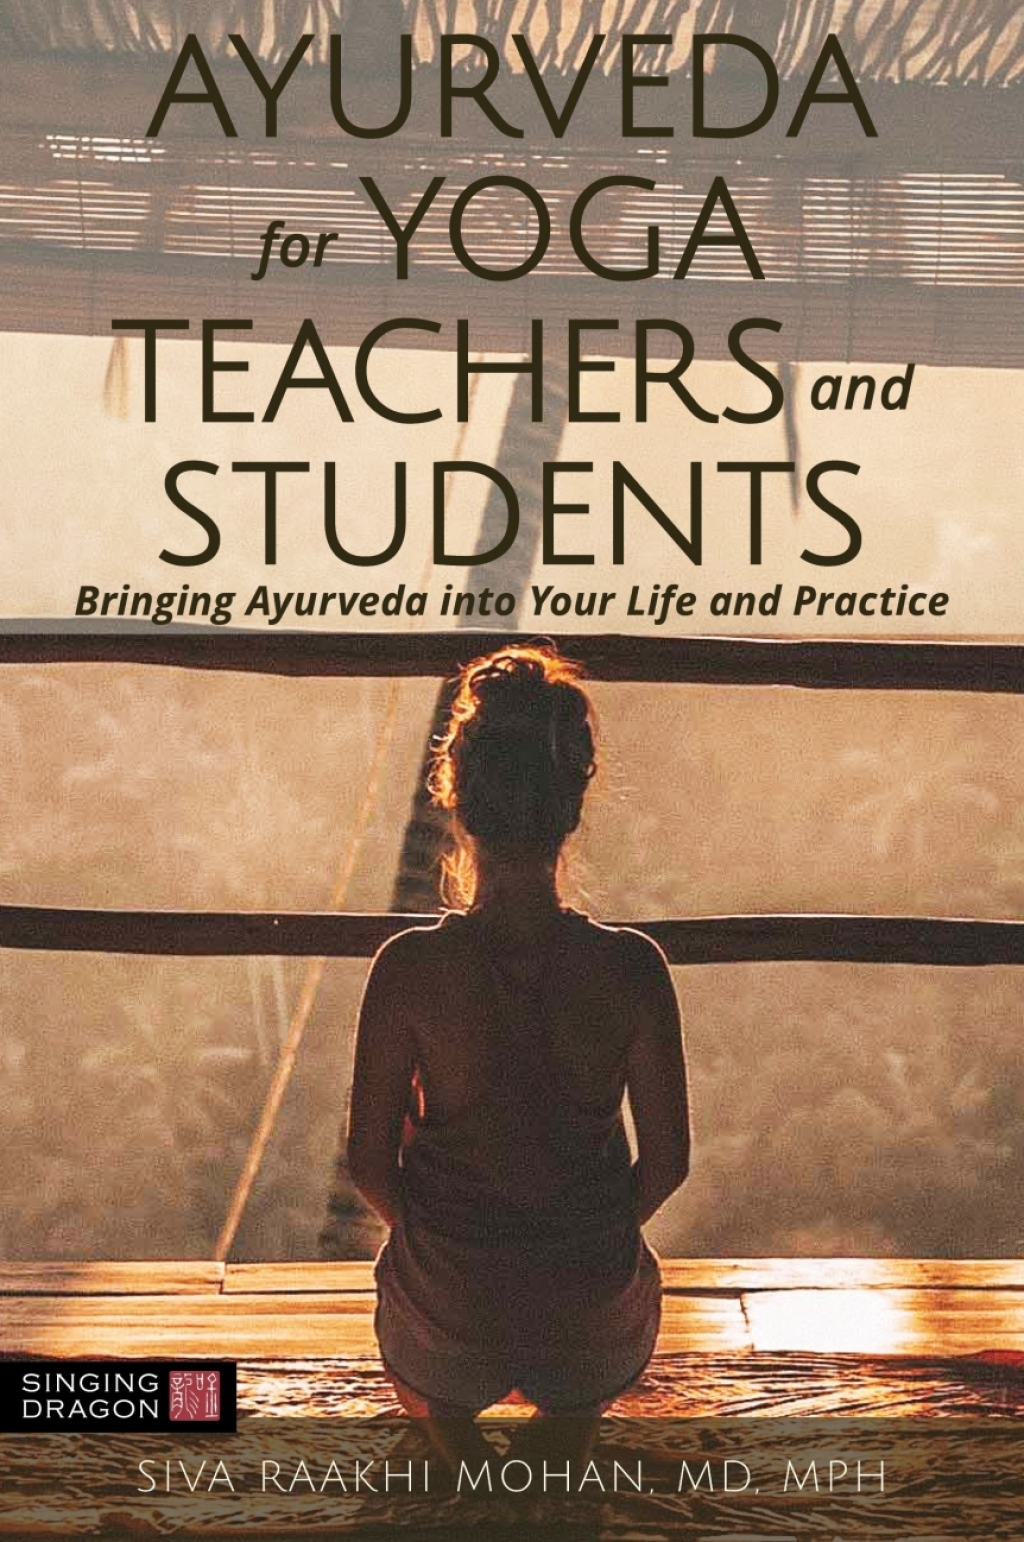 Ayurveda for Yoga Teachers and Students (eBook) - Siva Raakhi Mohan,